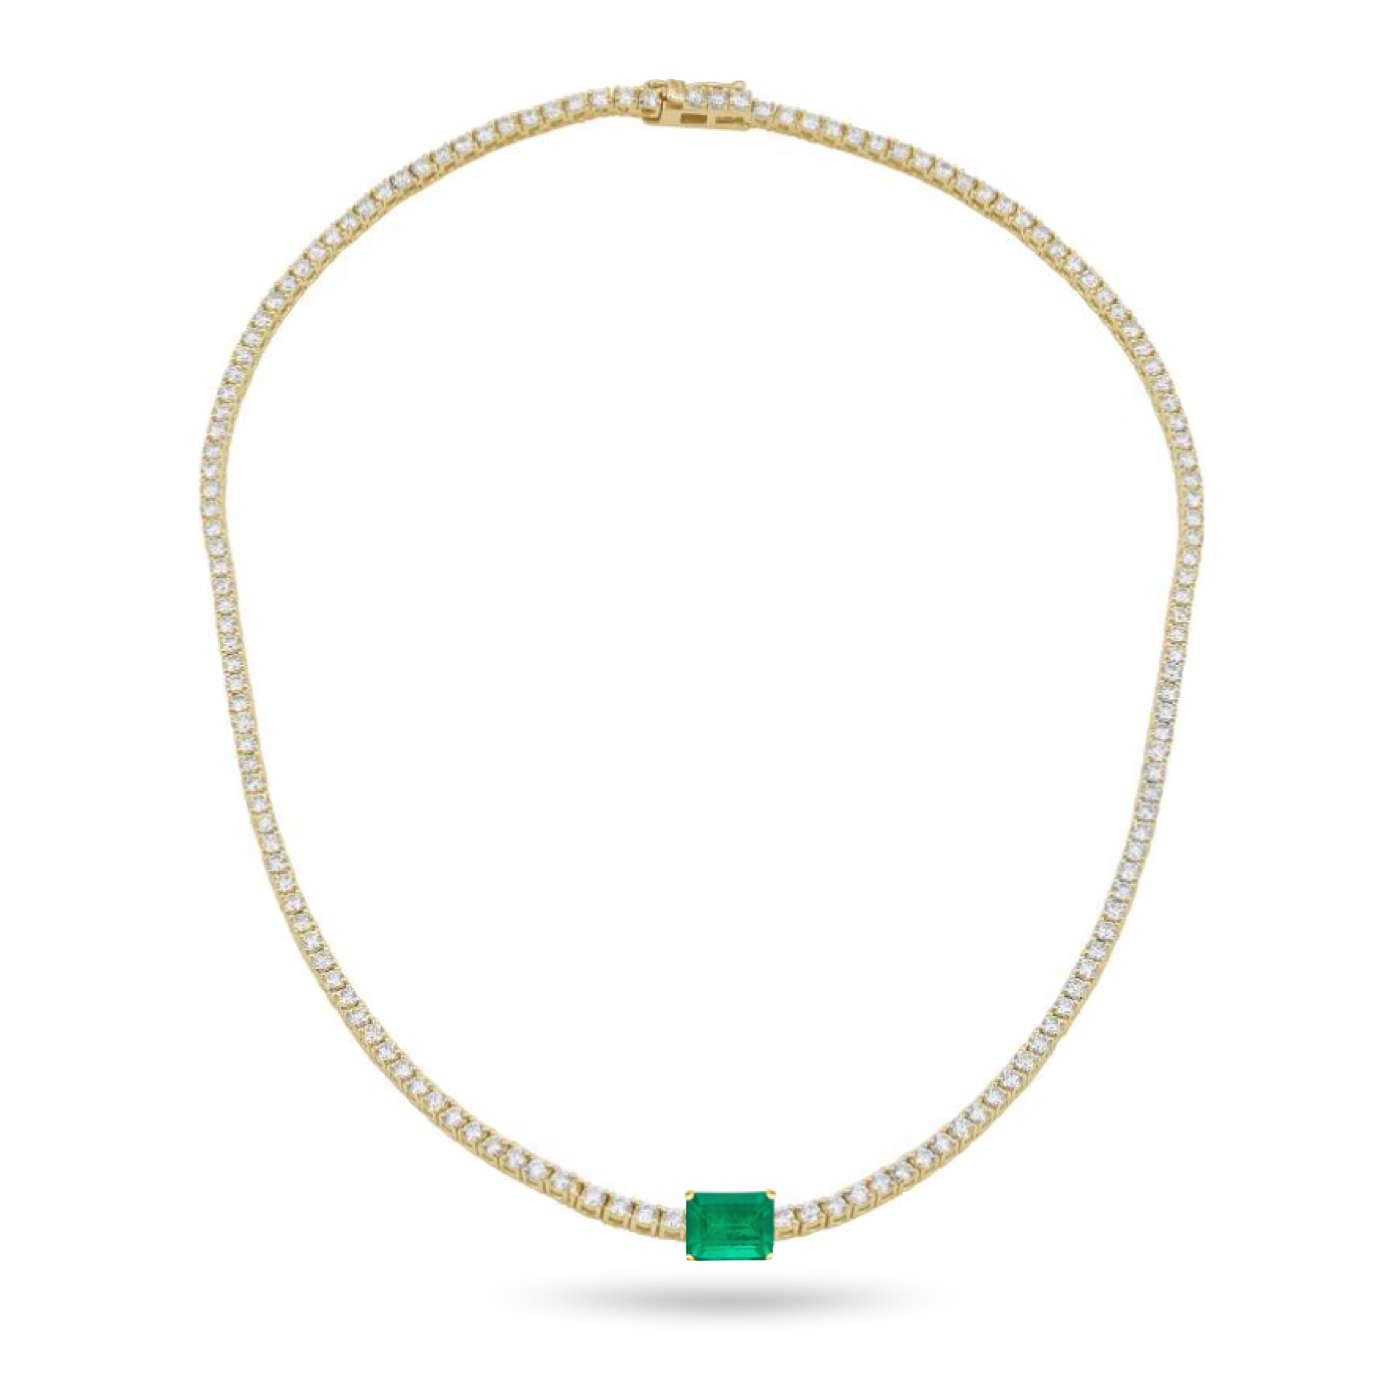 Statement Emerald Tennis Necklace